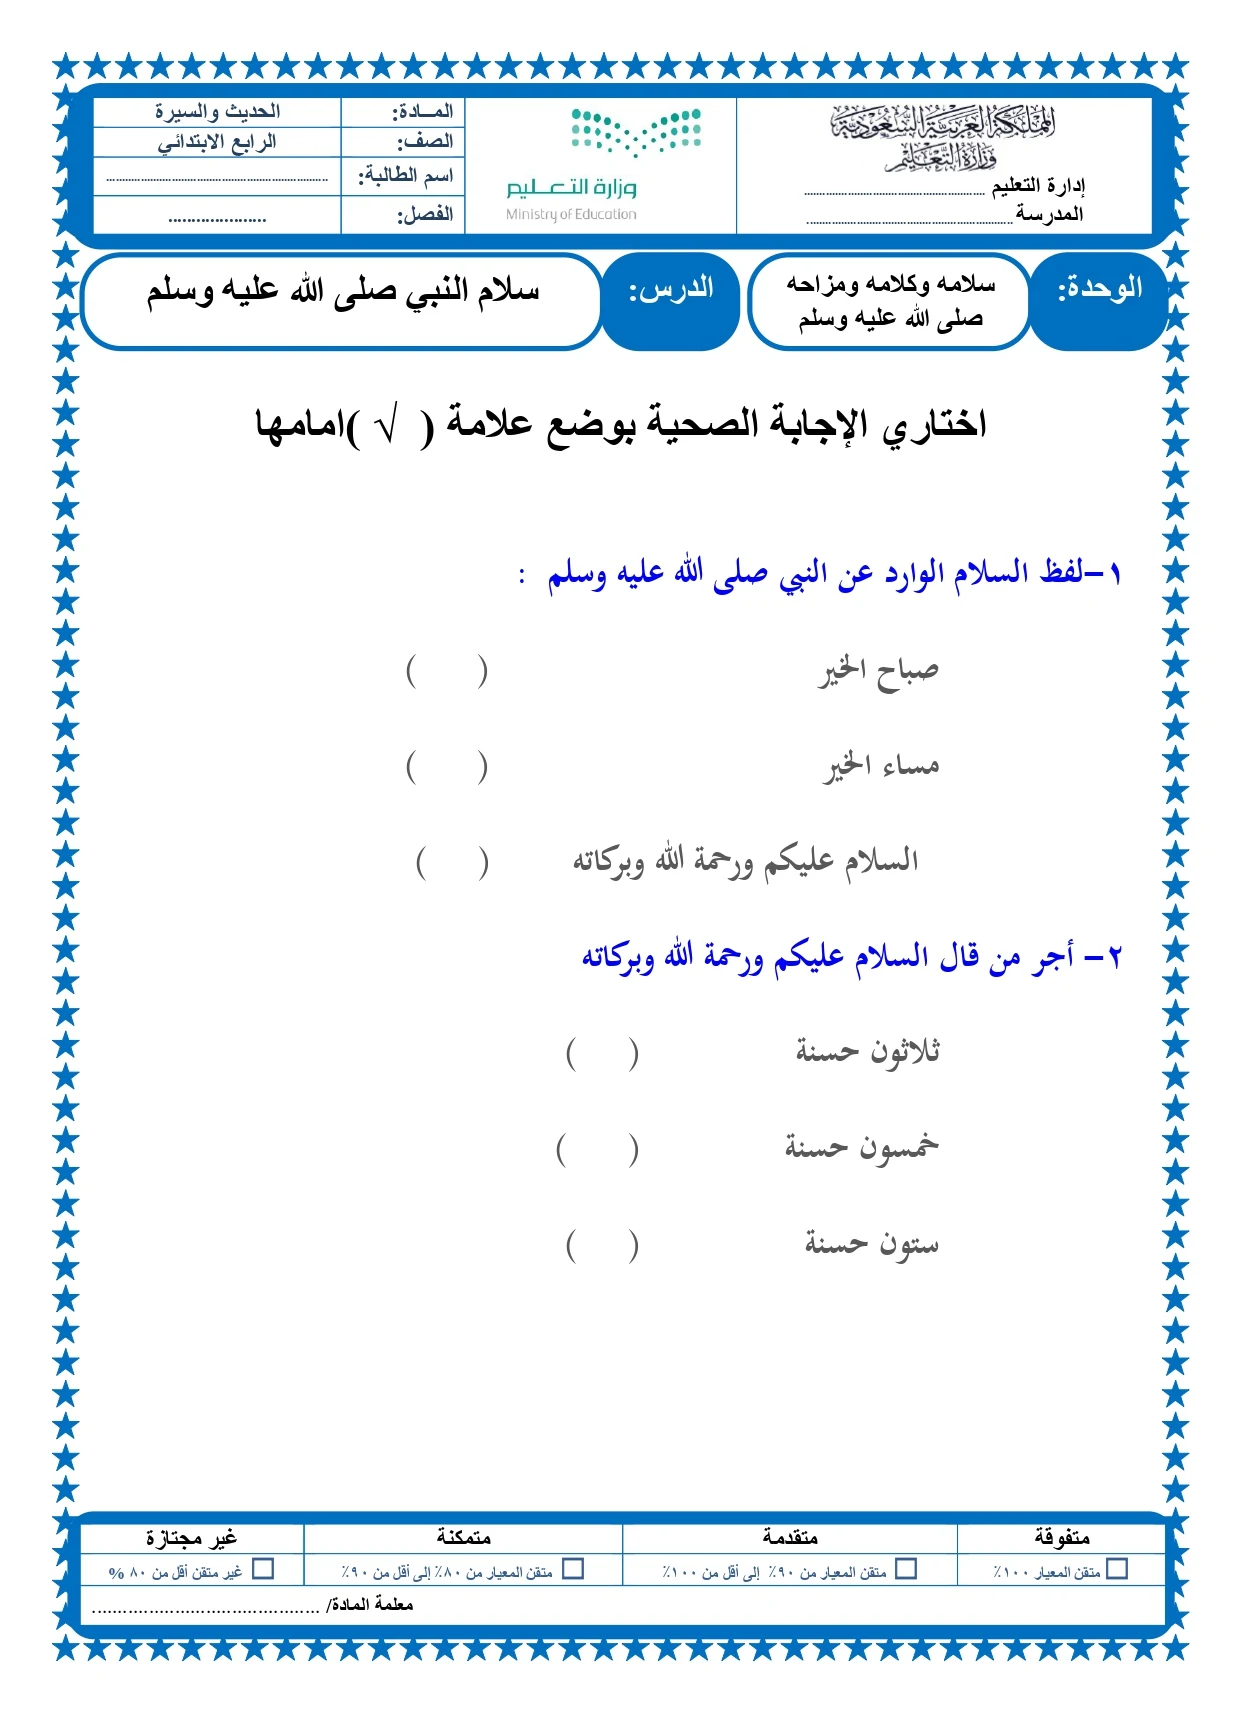 أوراق عمل لمادة التربية الإسلامية الصف الرابع الابتدائي الفصل الدراسي الثالث pdf تحميل مباشر مجاني